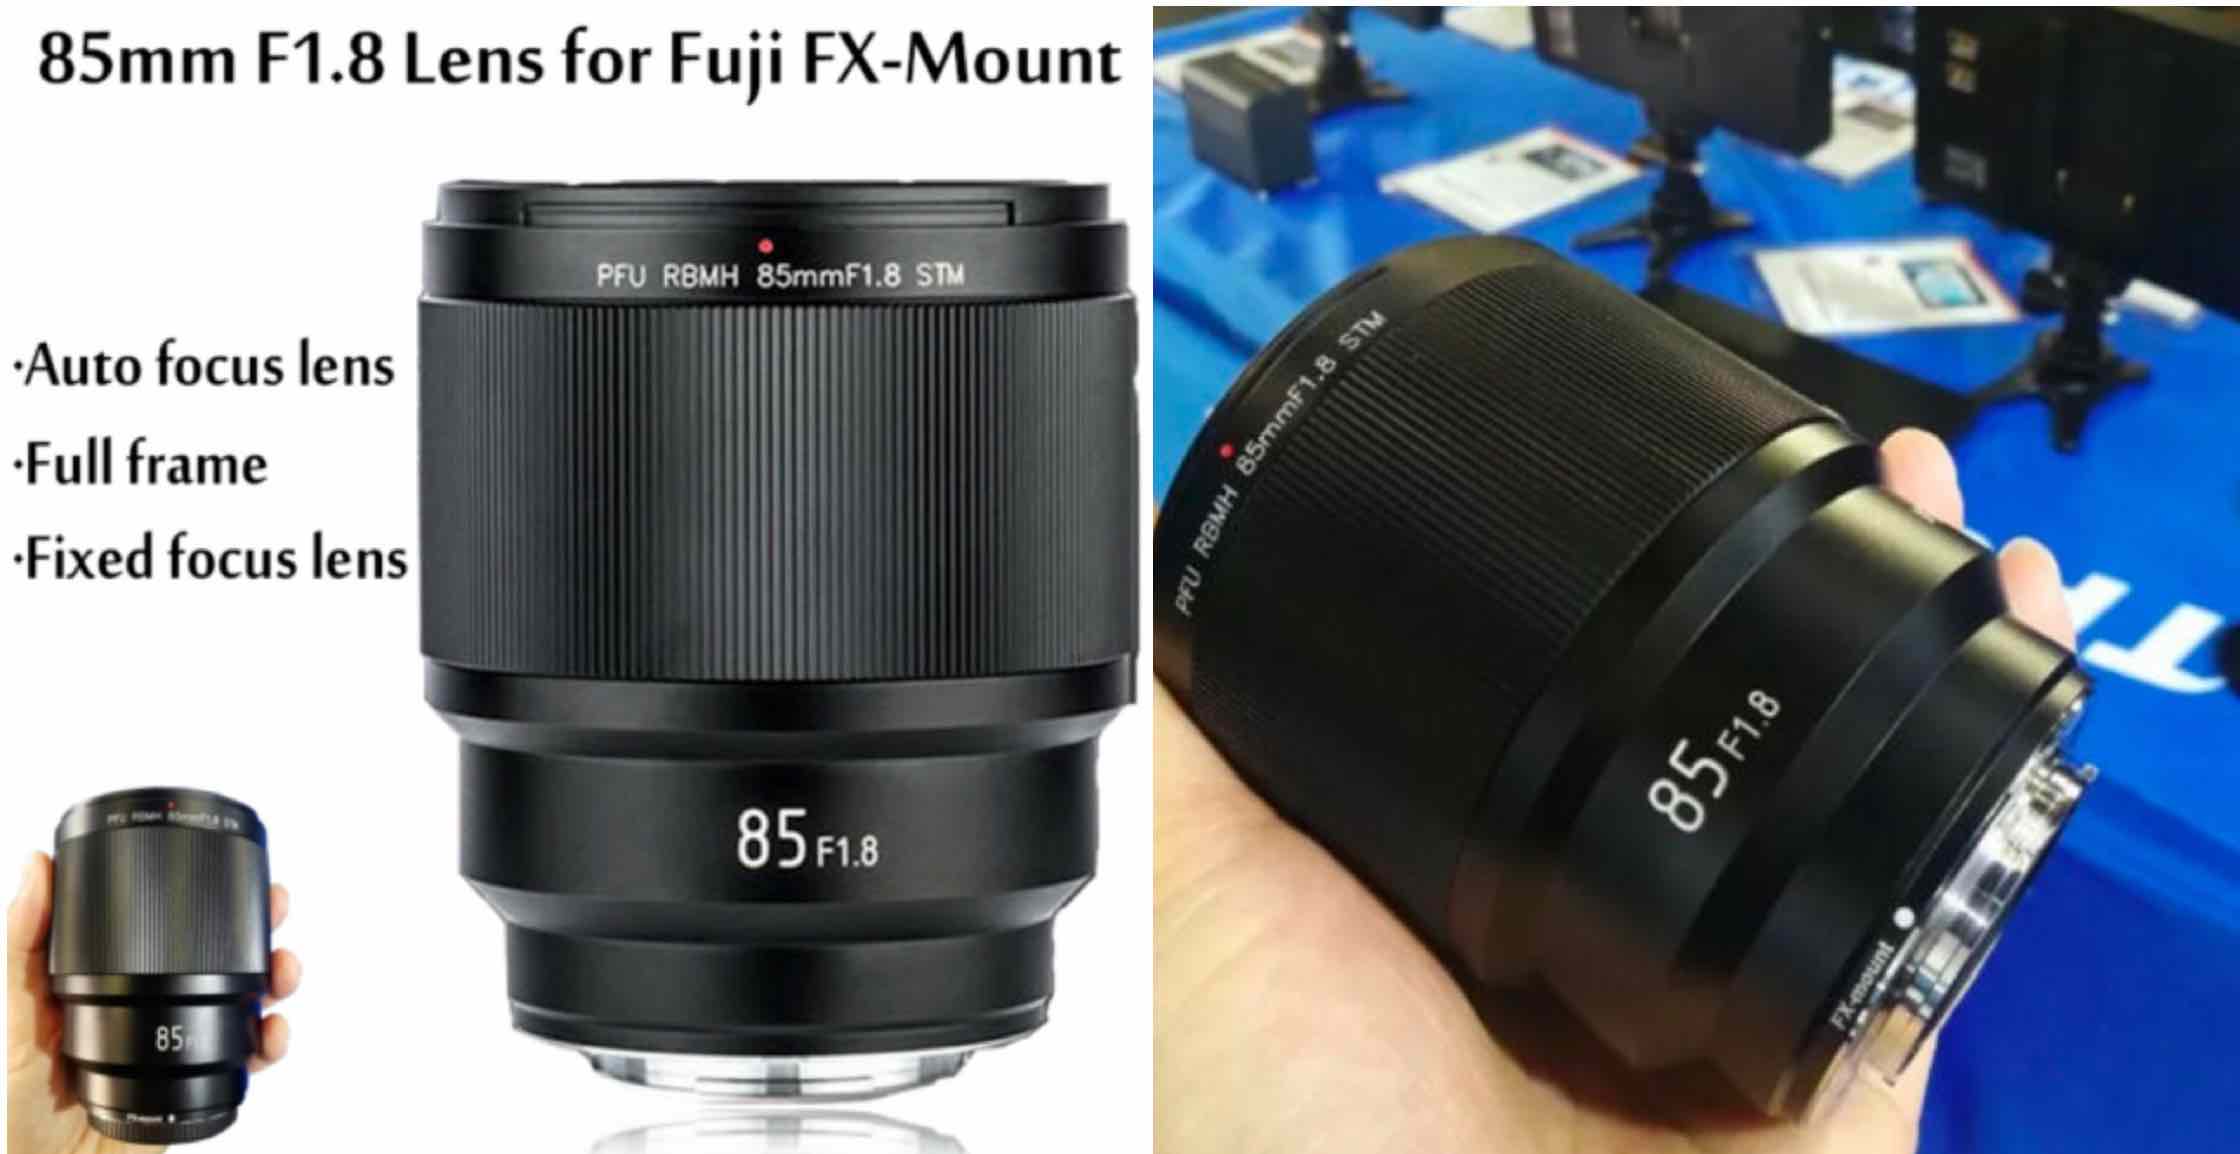 Voorschrijven Zaailing privaat Viltrox 85mm f/1.8 Autofocus Lens for Fujifilm X Review In Progress - Fuji  Rumors